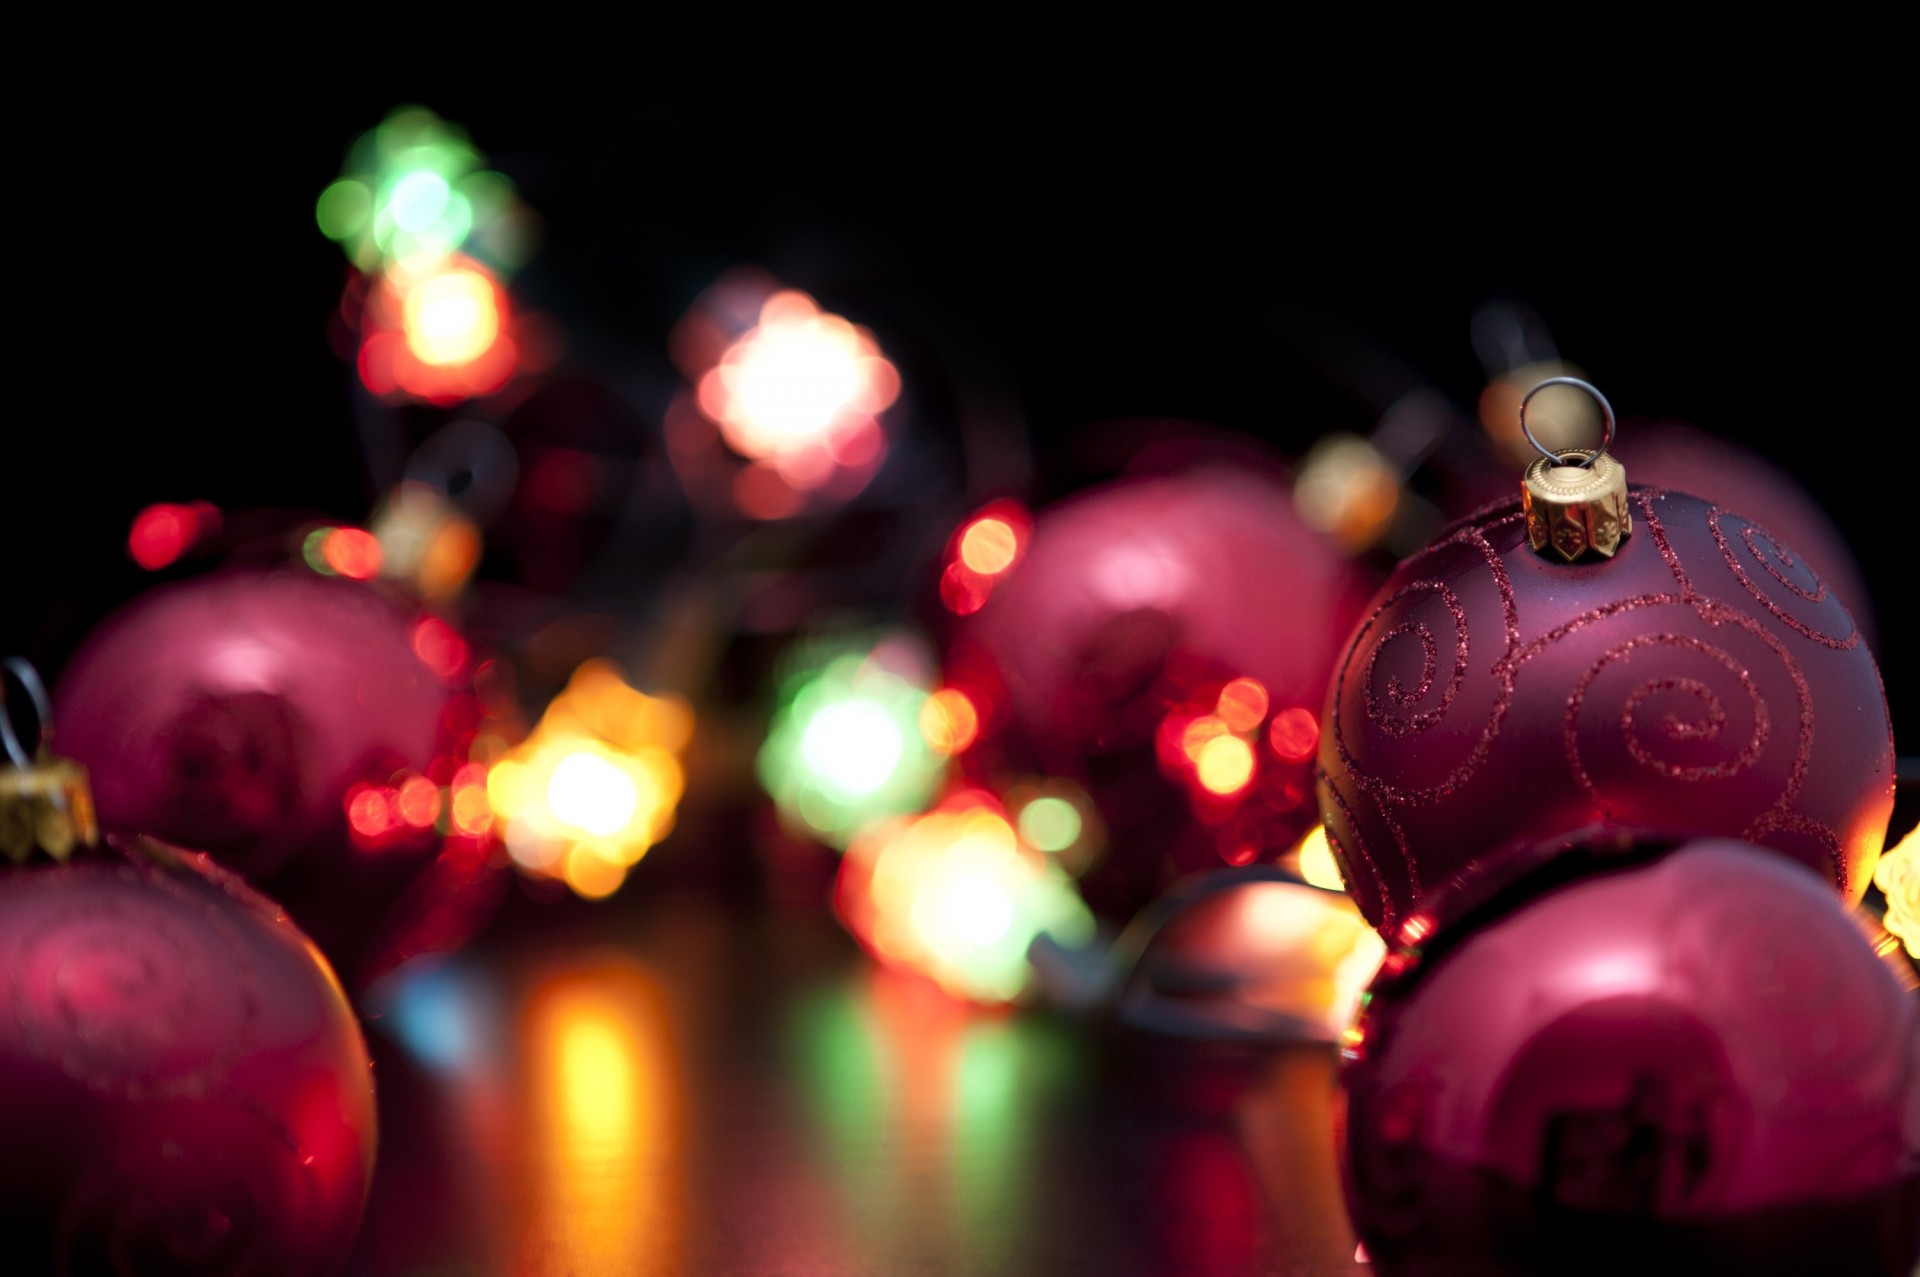 огни шары рождество новый год праздник фонарики